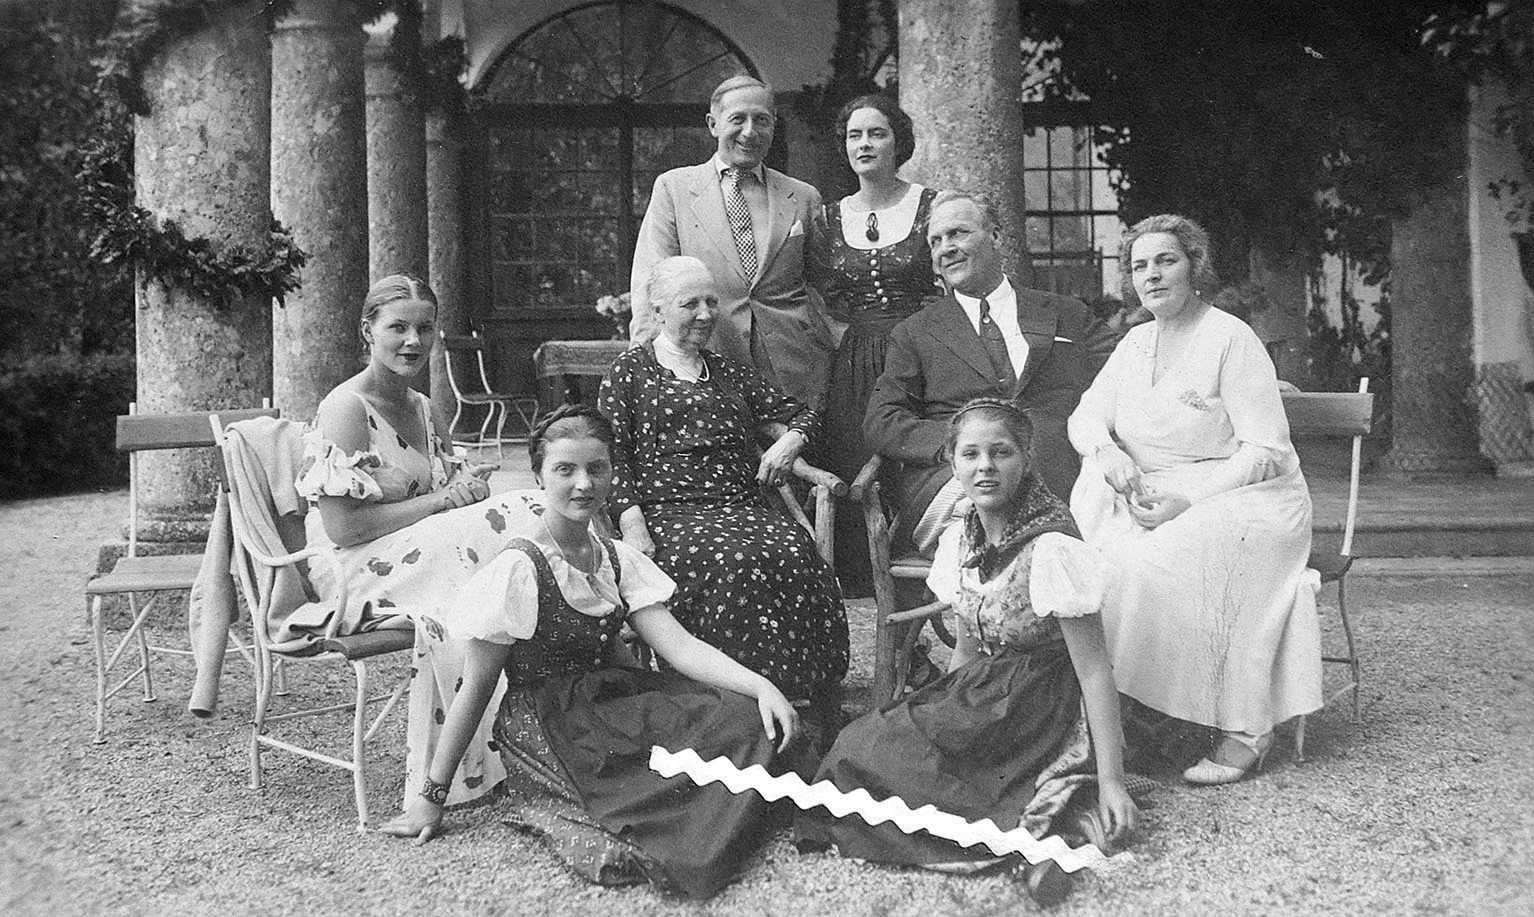 Famiglia di Shalyapin. Tyrol. Kitzbuehel. 1934
